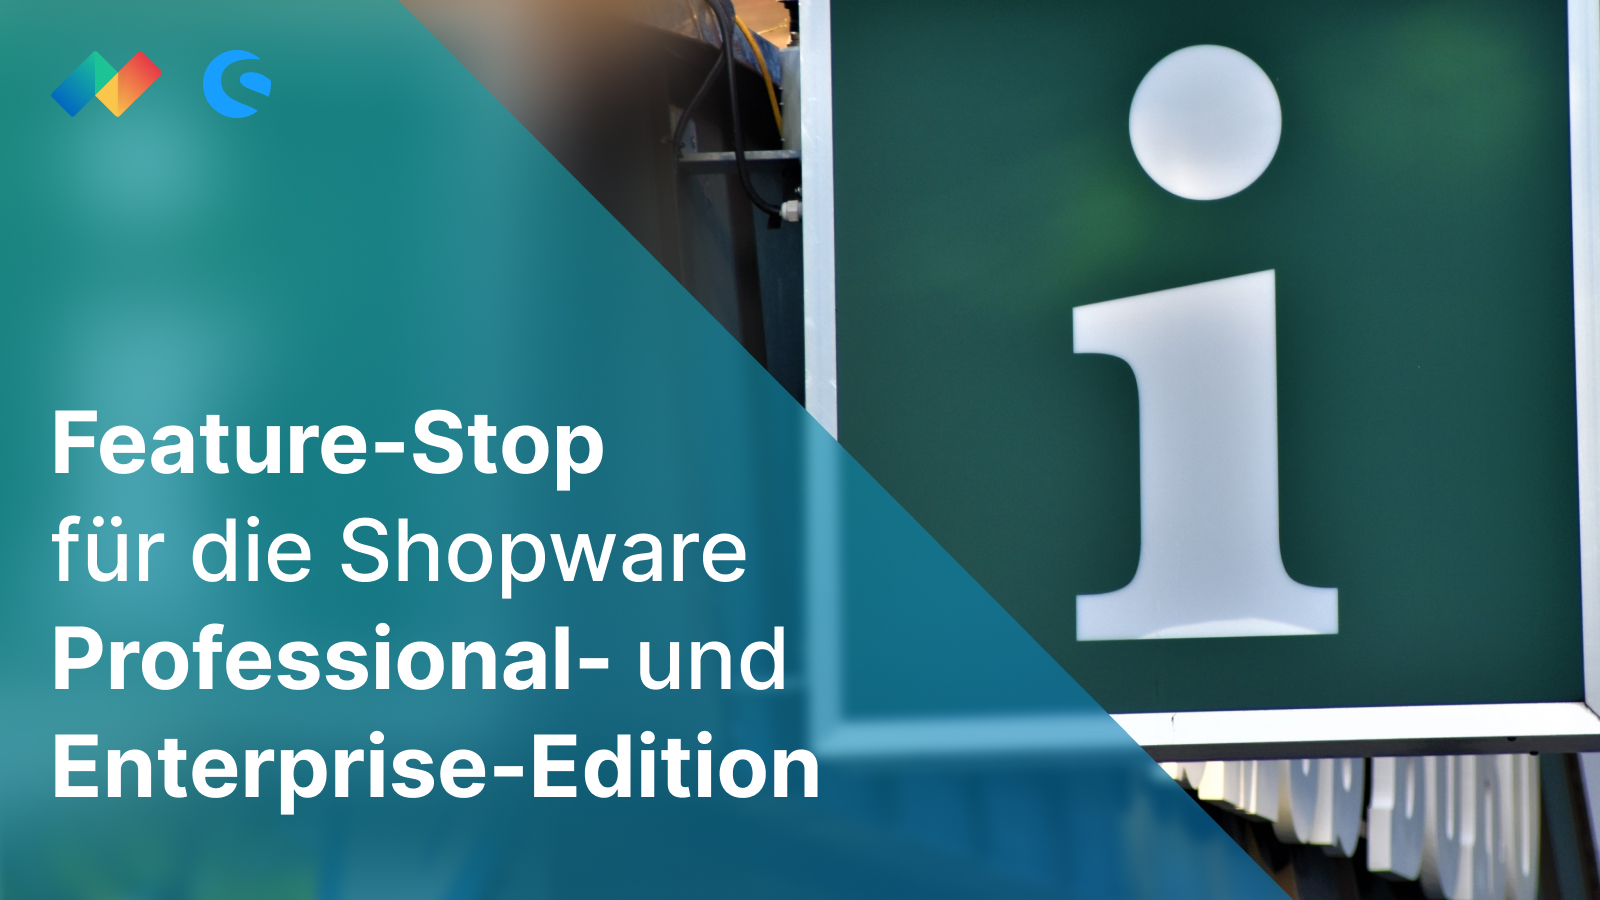 Feature-Stop für die Shopware Professional- und Enterprise-Edition